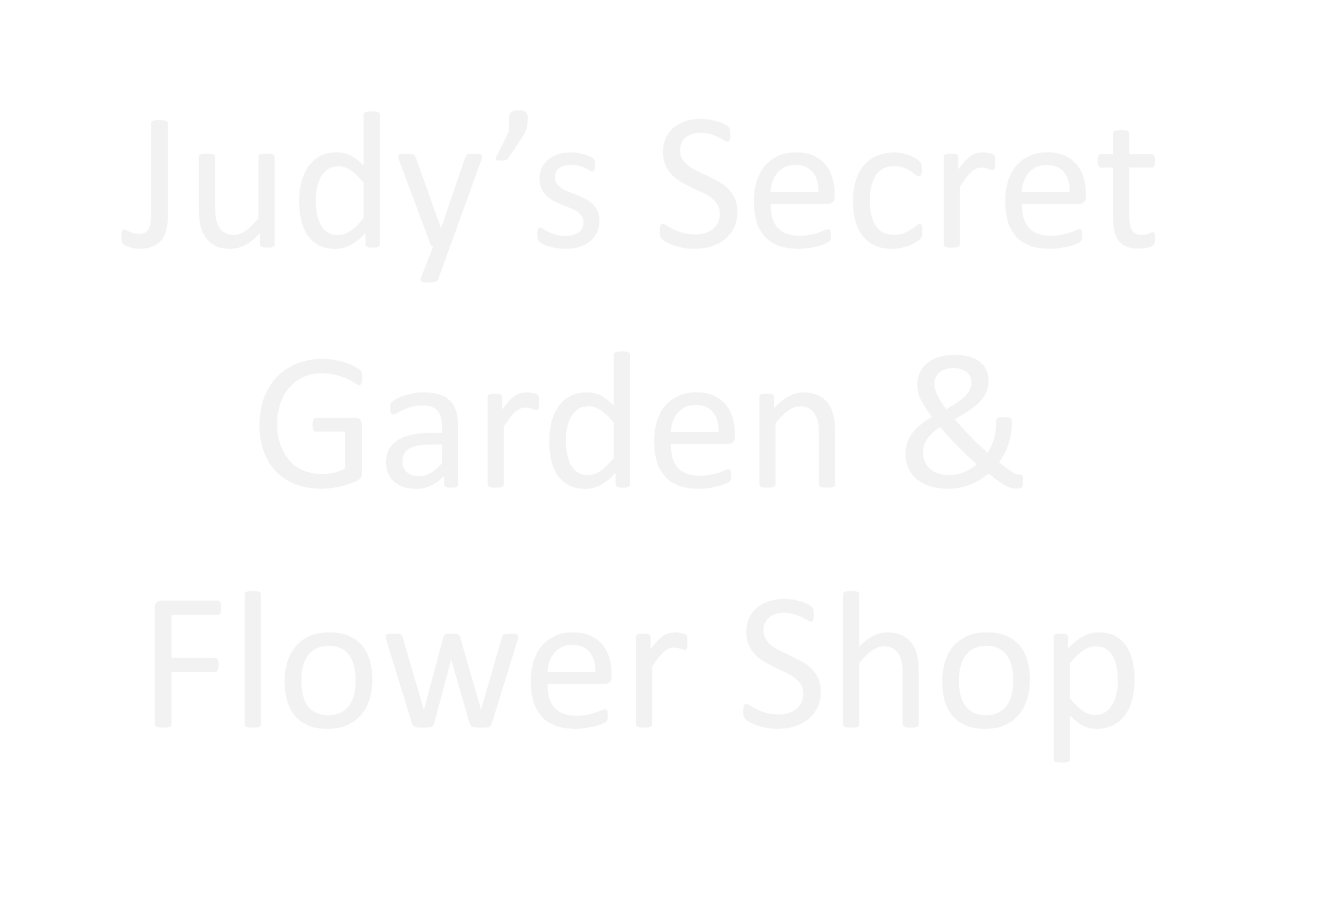 Judy's Secret Garden & Flower Shop 5045 AL-129, Winfield Alabama 35594